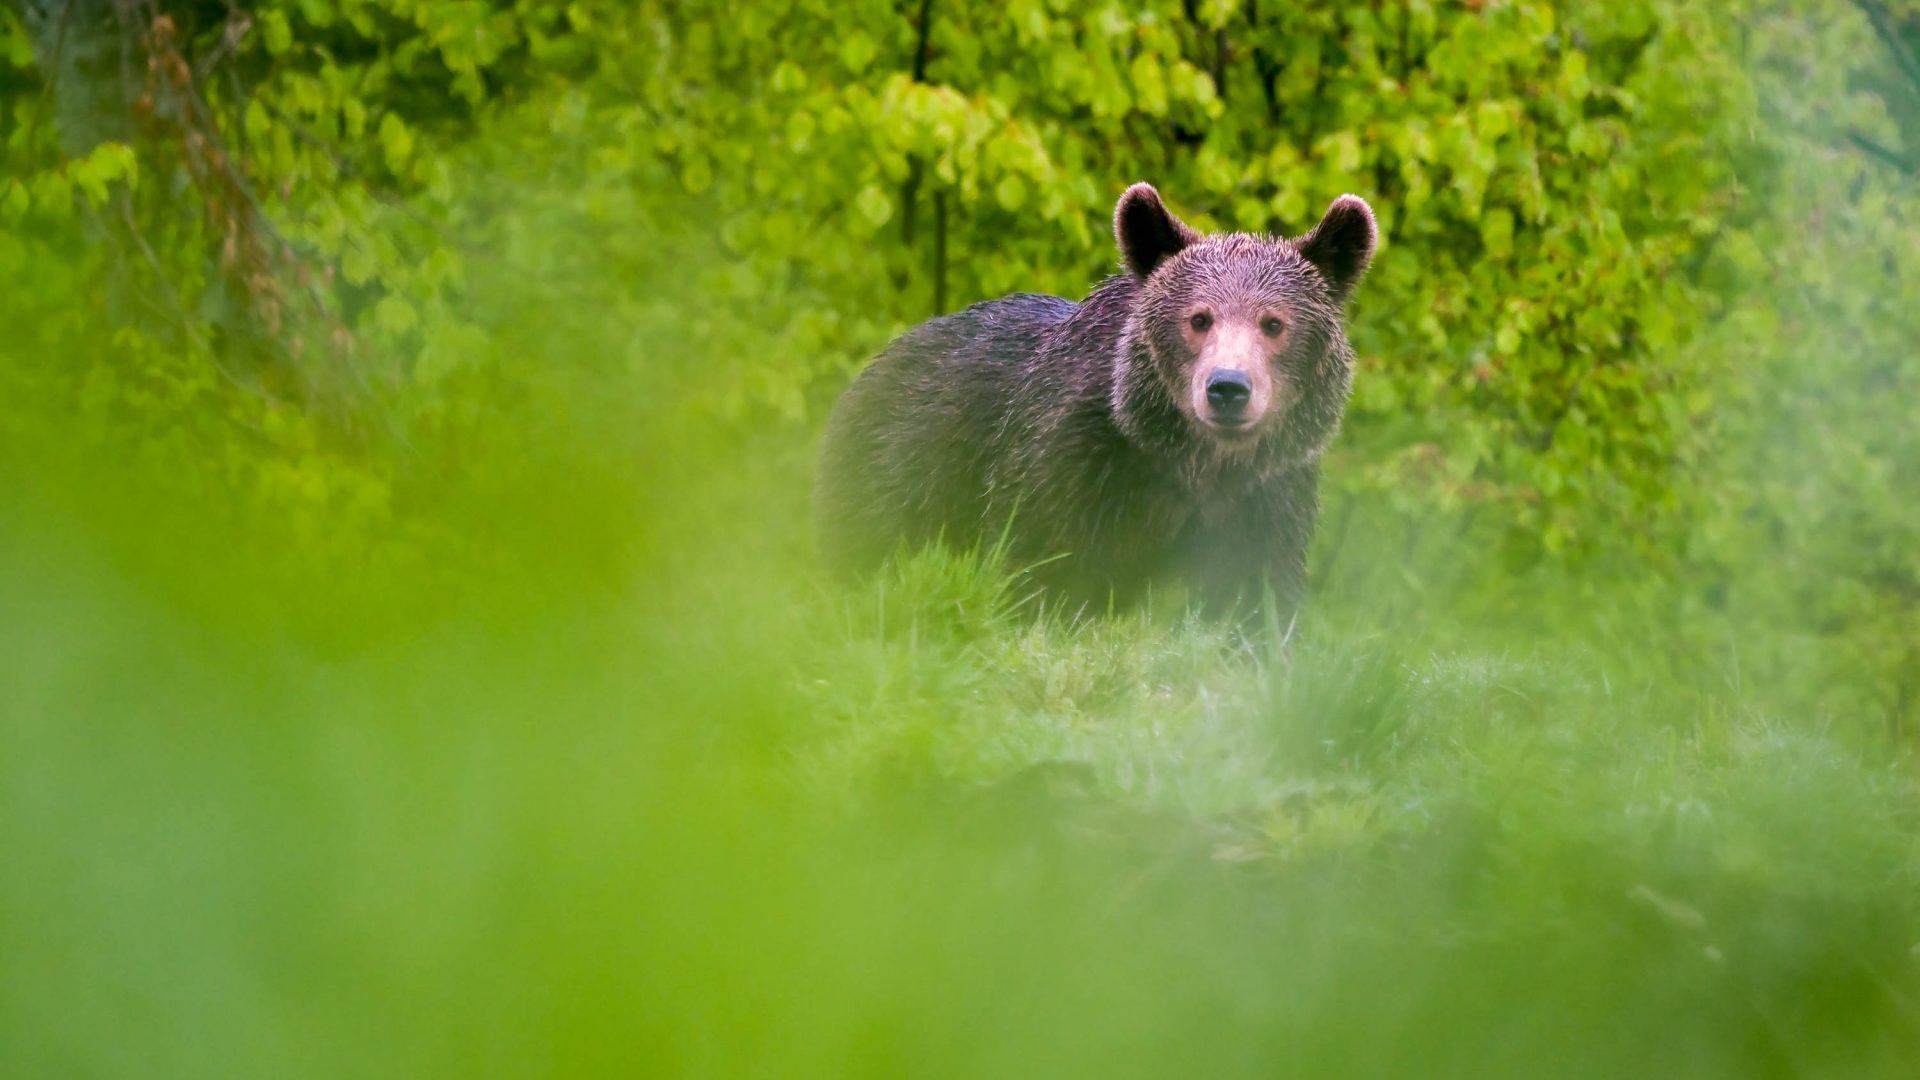 A bear seen through green grass.